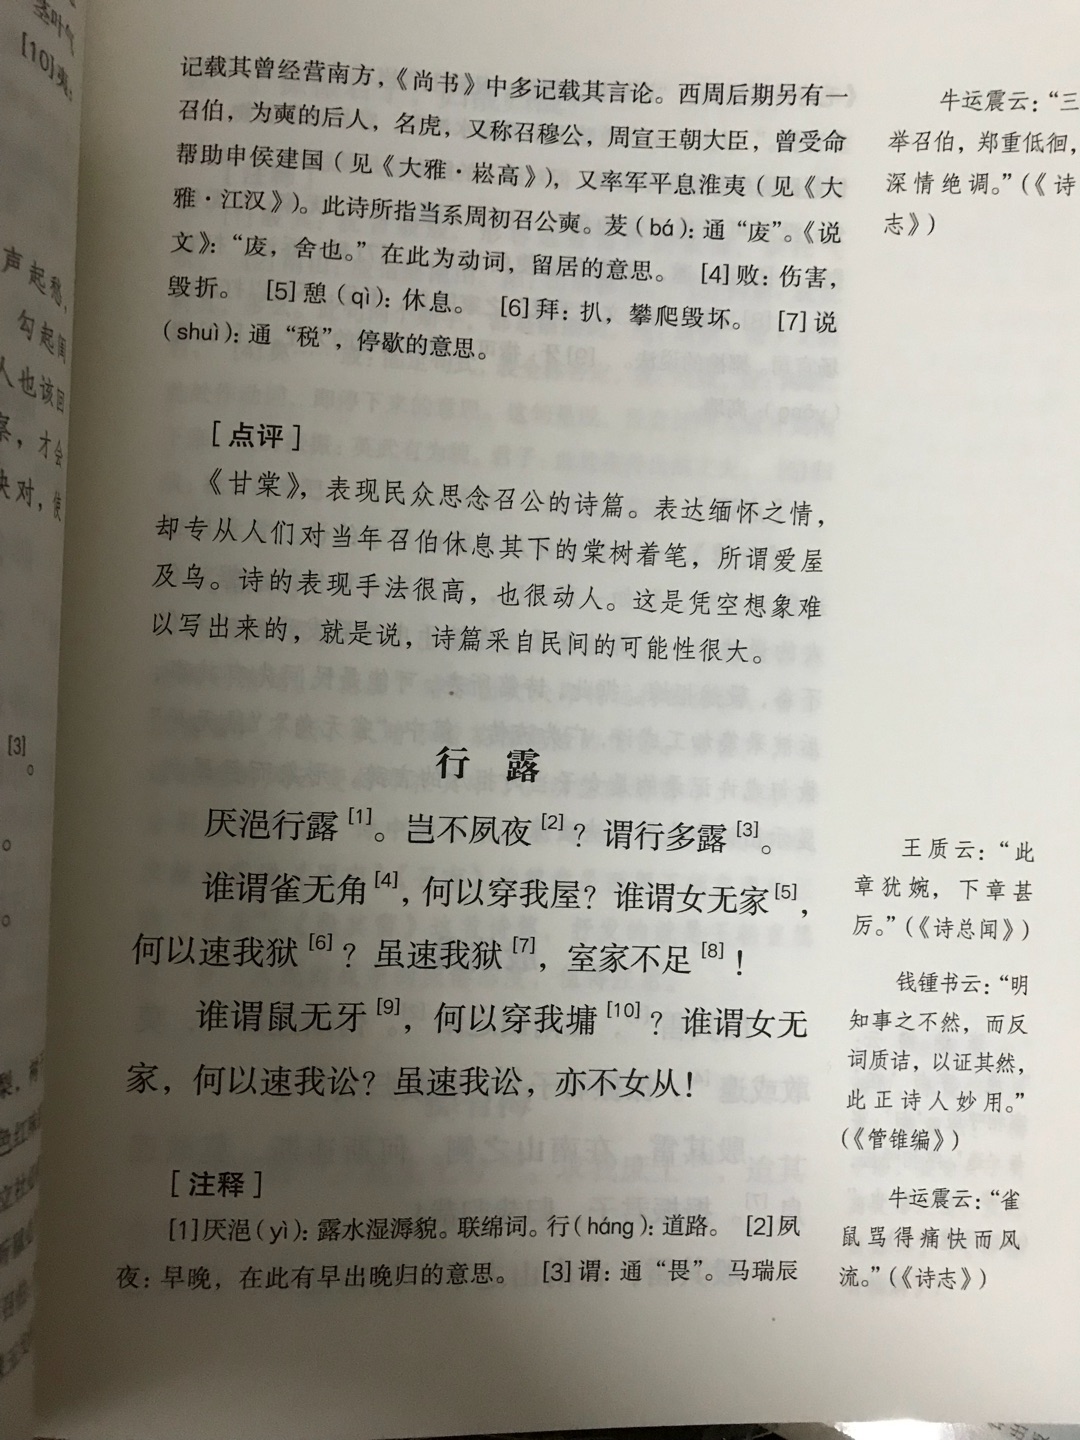 《诗经》是中国最早的一部诗歌总集。翻开这本书，目录做的特别详细，想看哪一篇直接就能找到，特别方便。书本的装帧很美，整本书的分层介绍也很规整。纸张的手感很棒。封面也很素雅，字迹也蛮大，爱不释手。